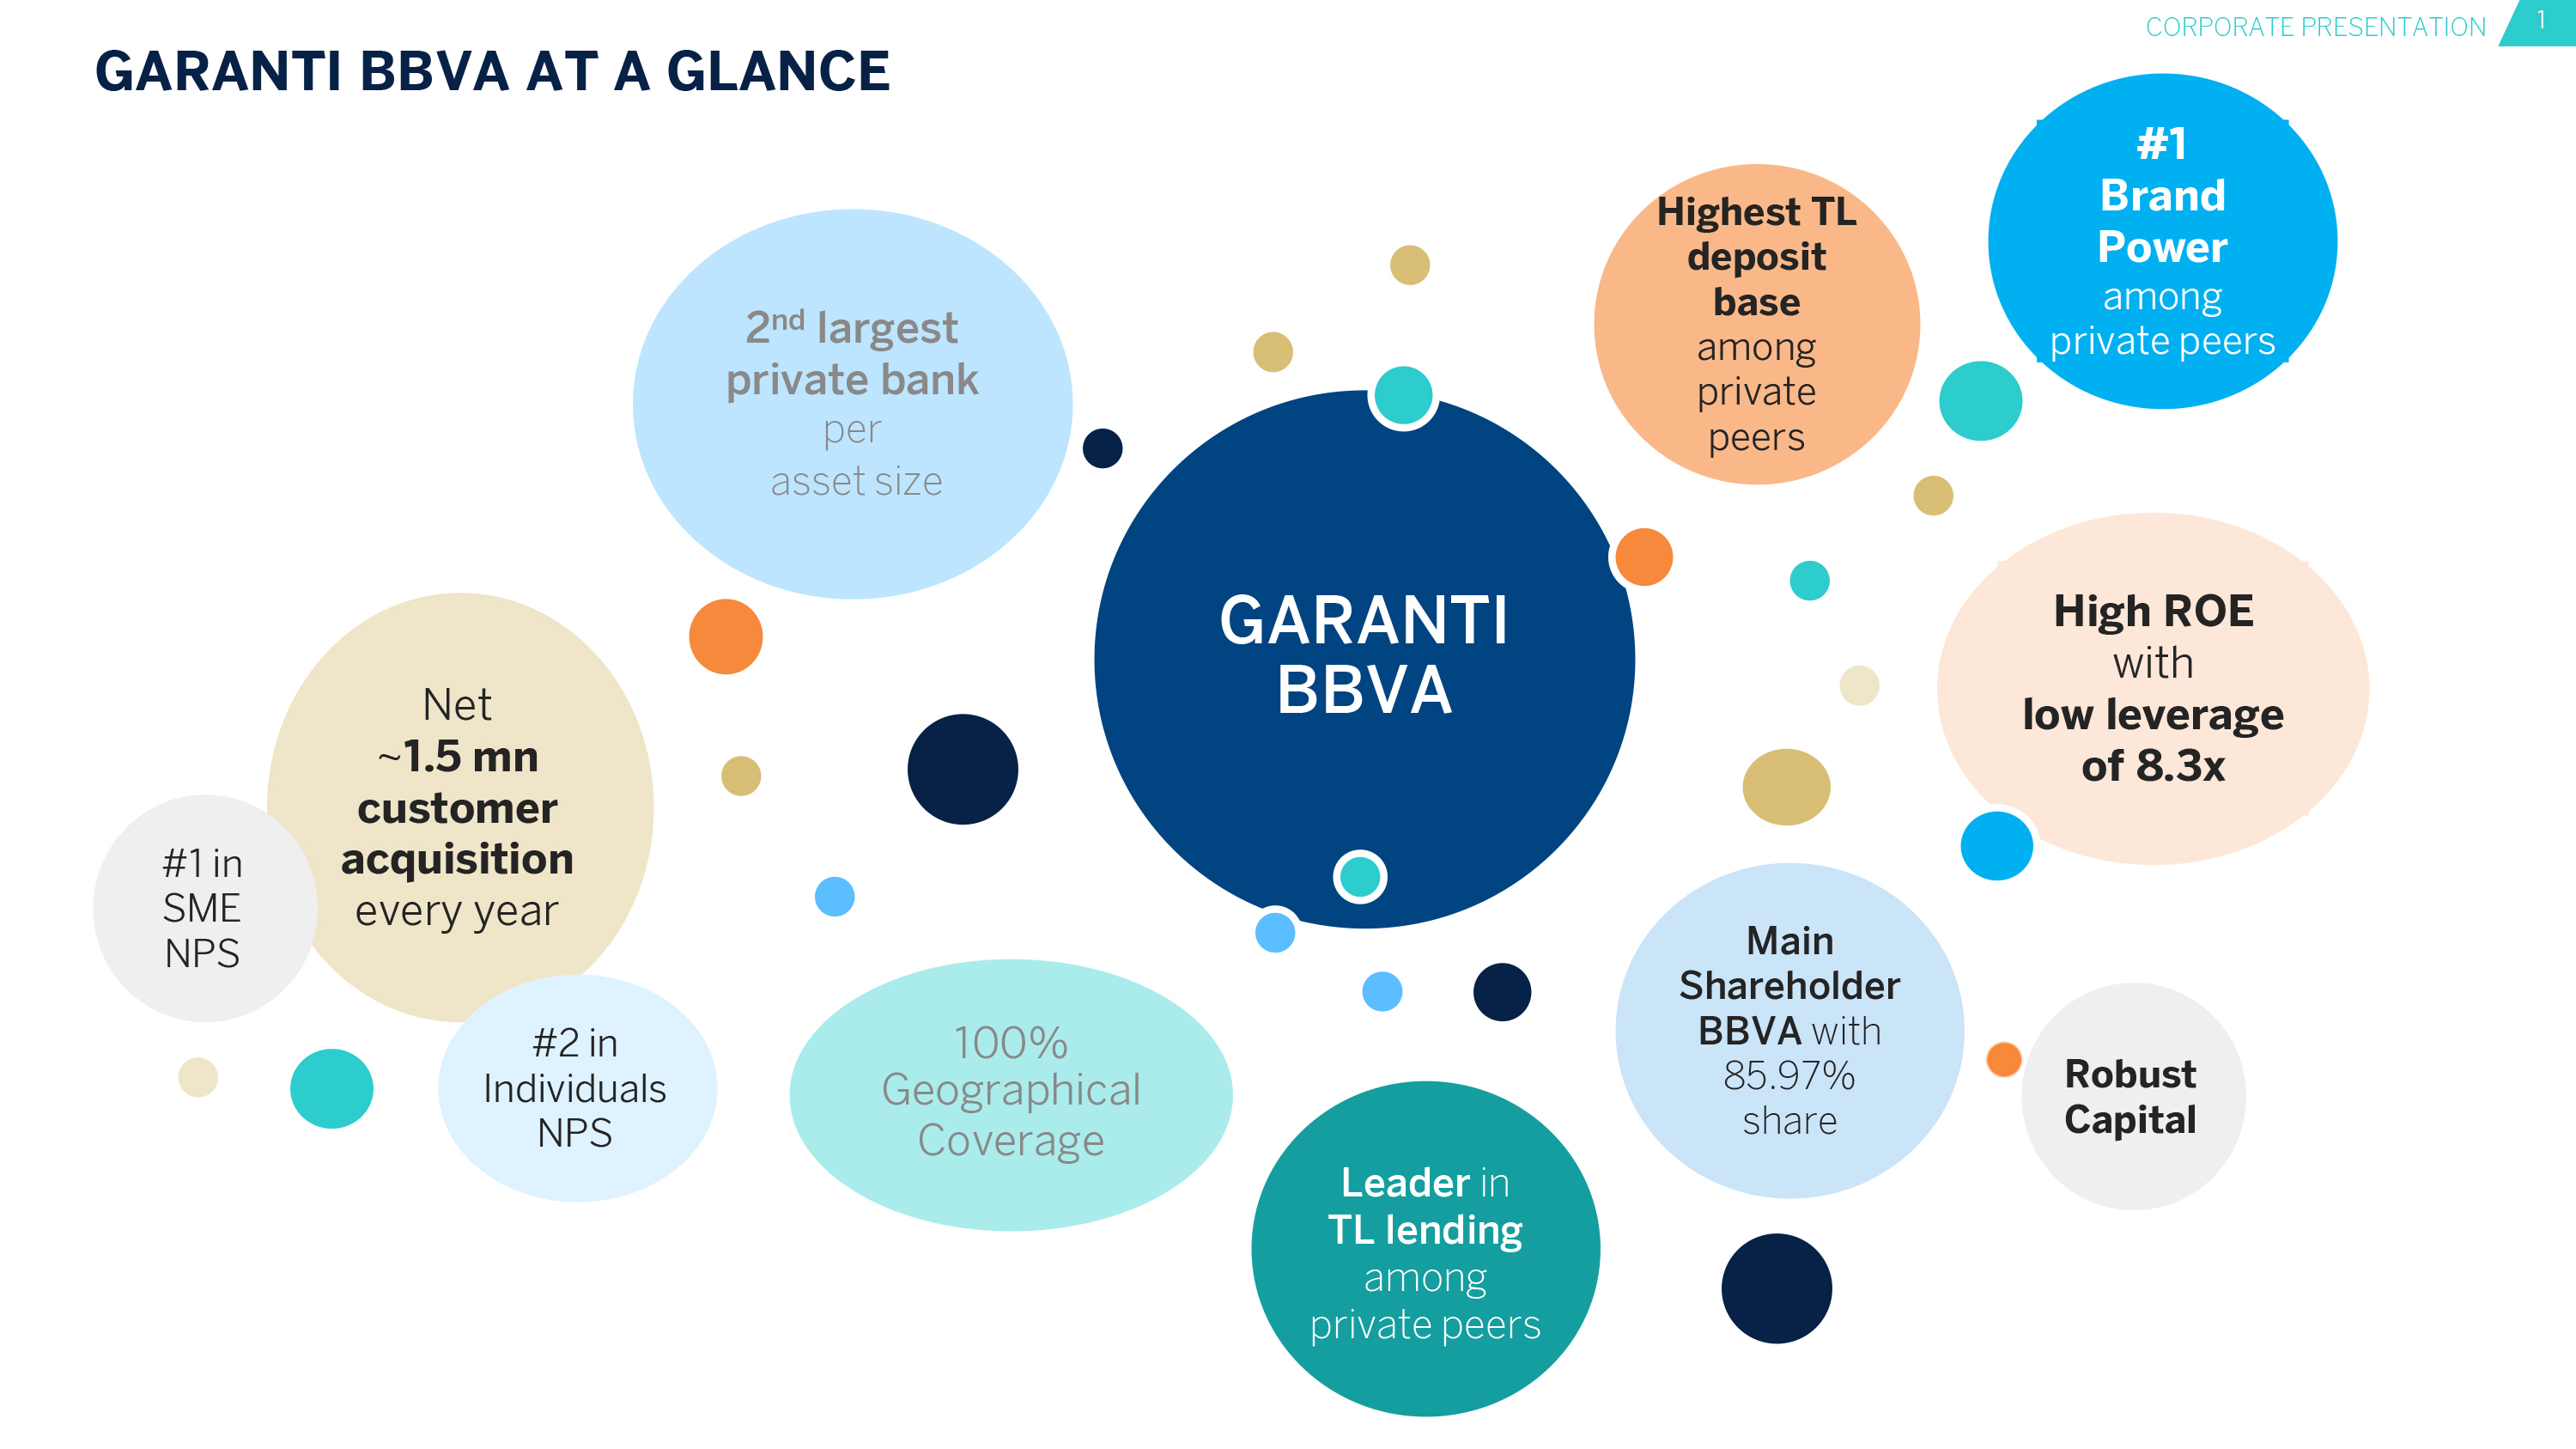 Why Garanti BBVA